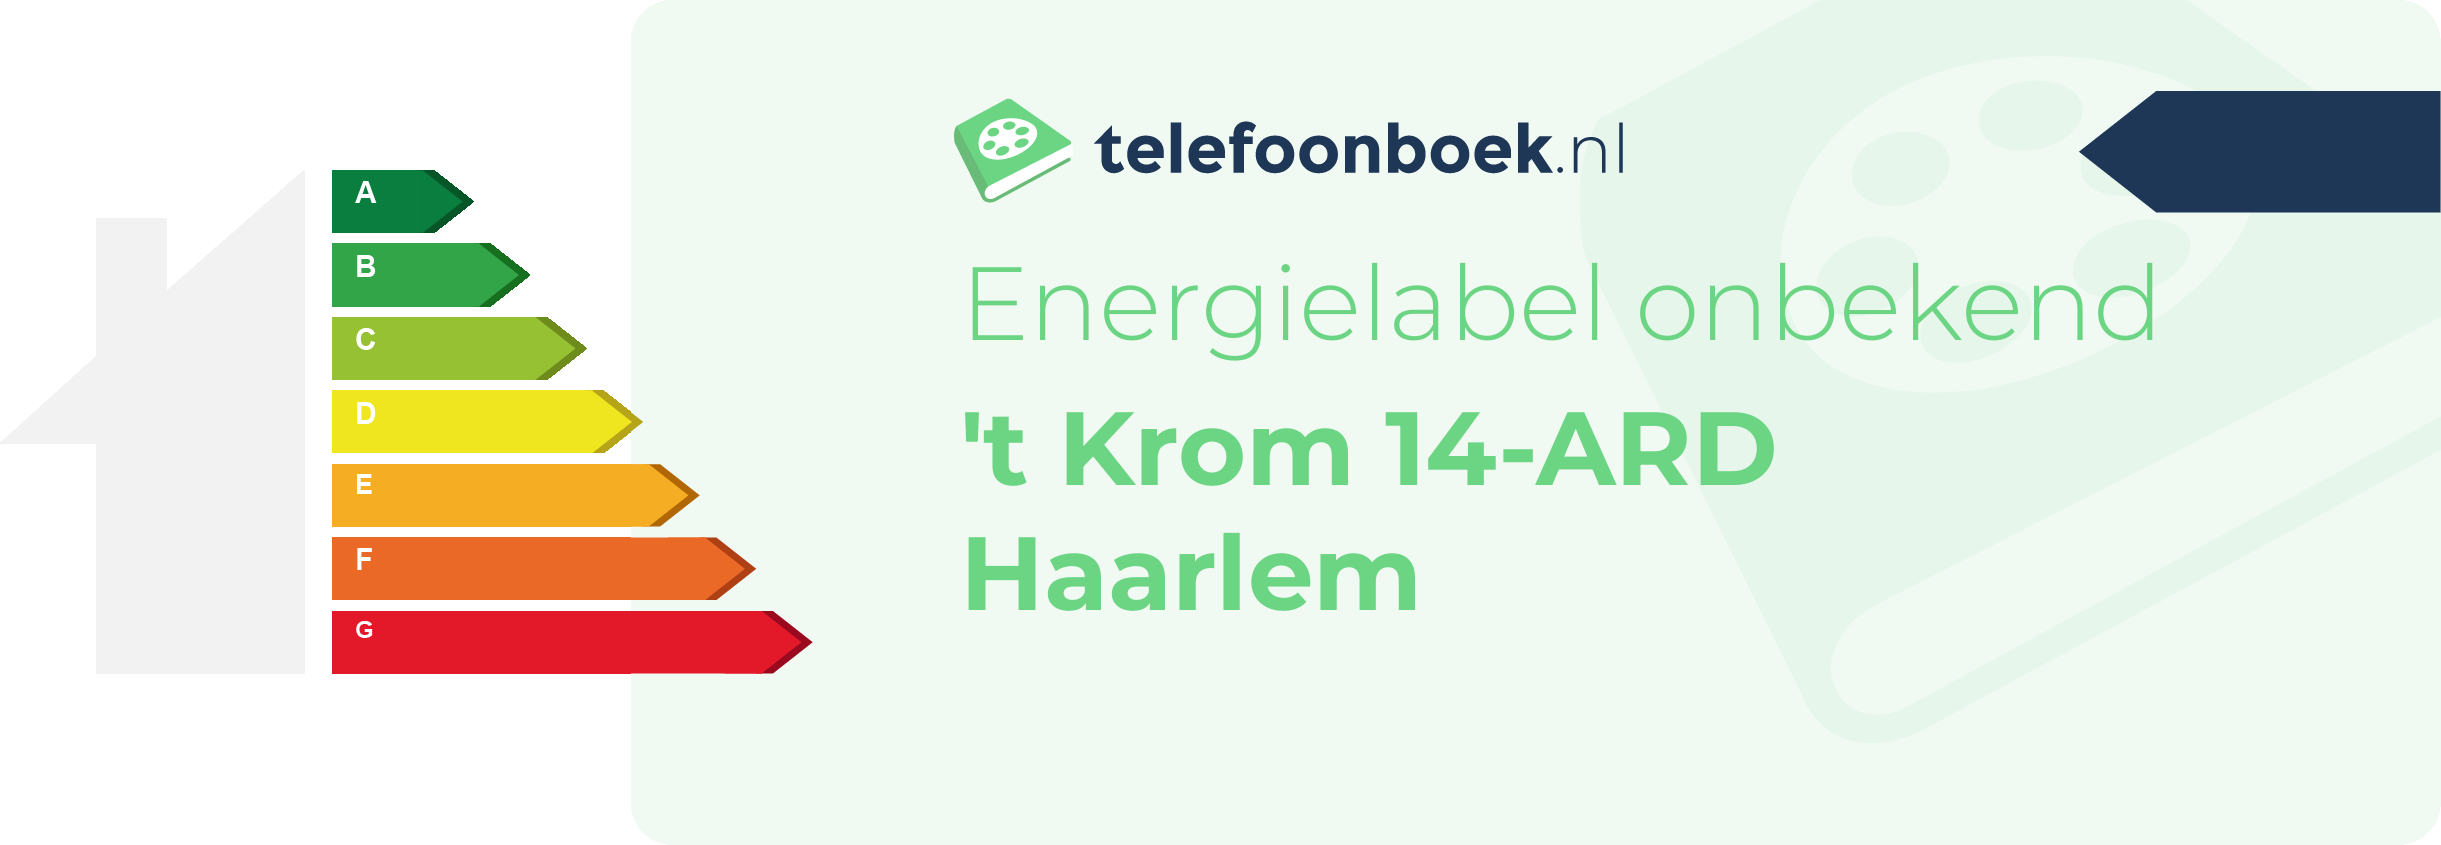 Energielabel 't Krom 14-ARD Haarlem